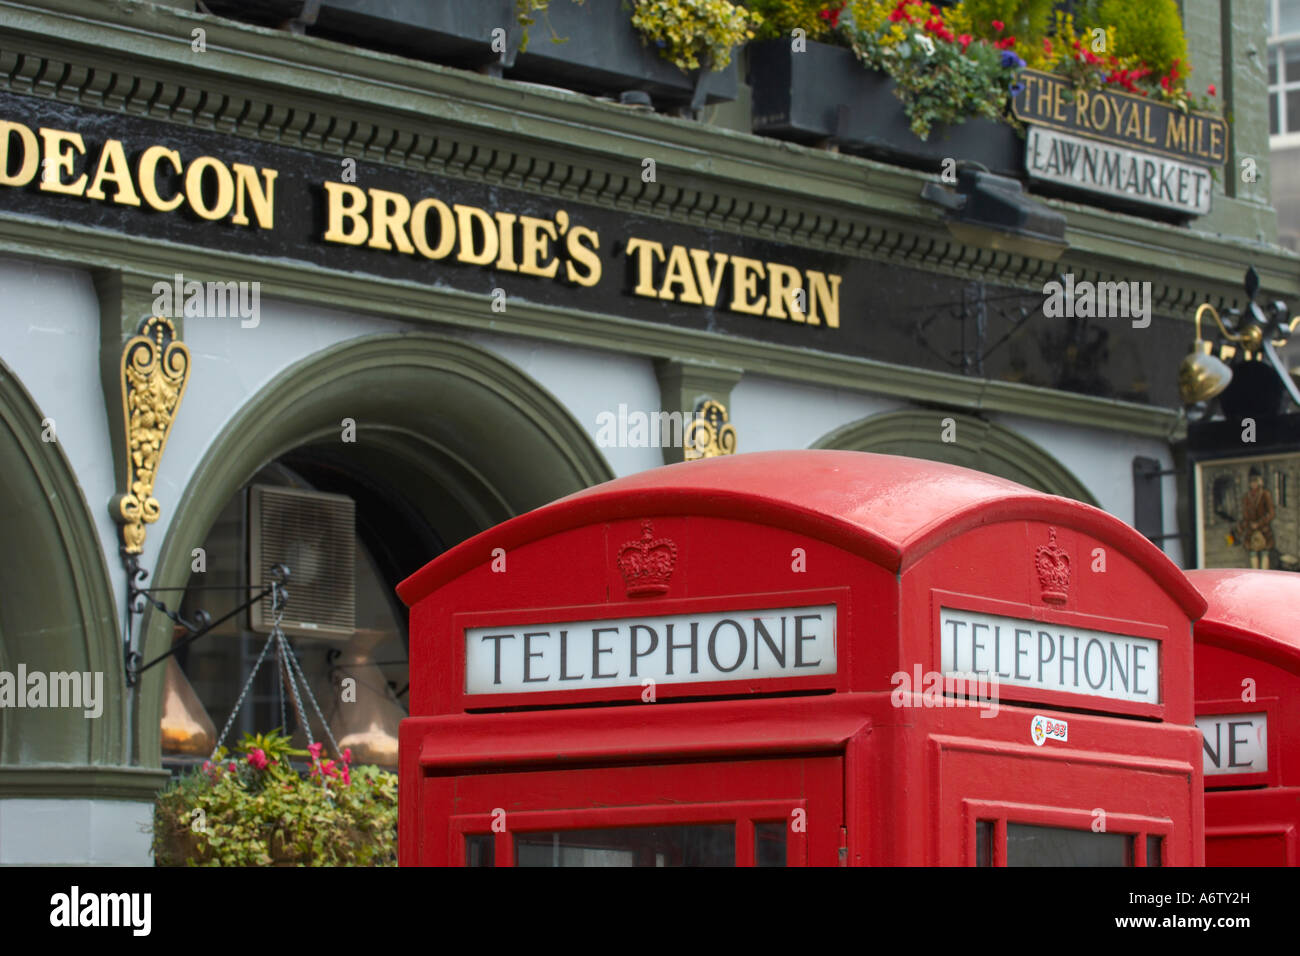 K2 téléphone traditionnel rouge cases en face de la taverne traditionnelle Deacon Brodie dans la vieille ville d'Édimbourg Banque D'Images